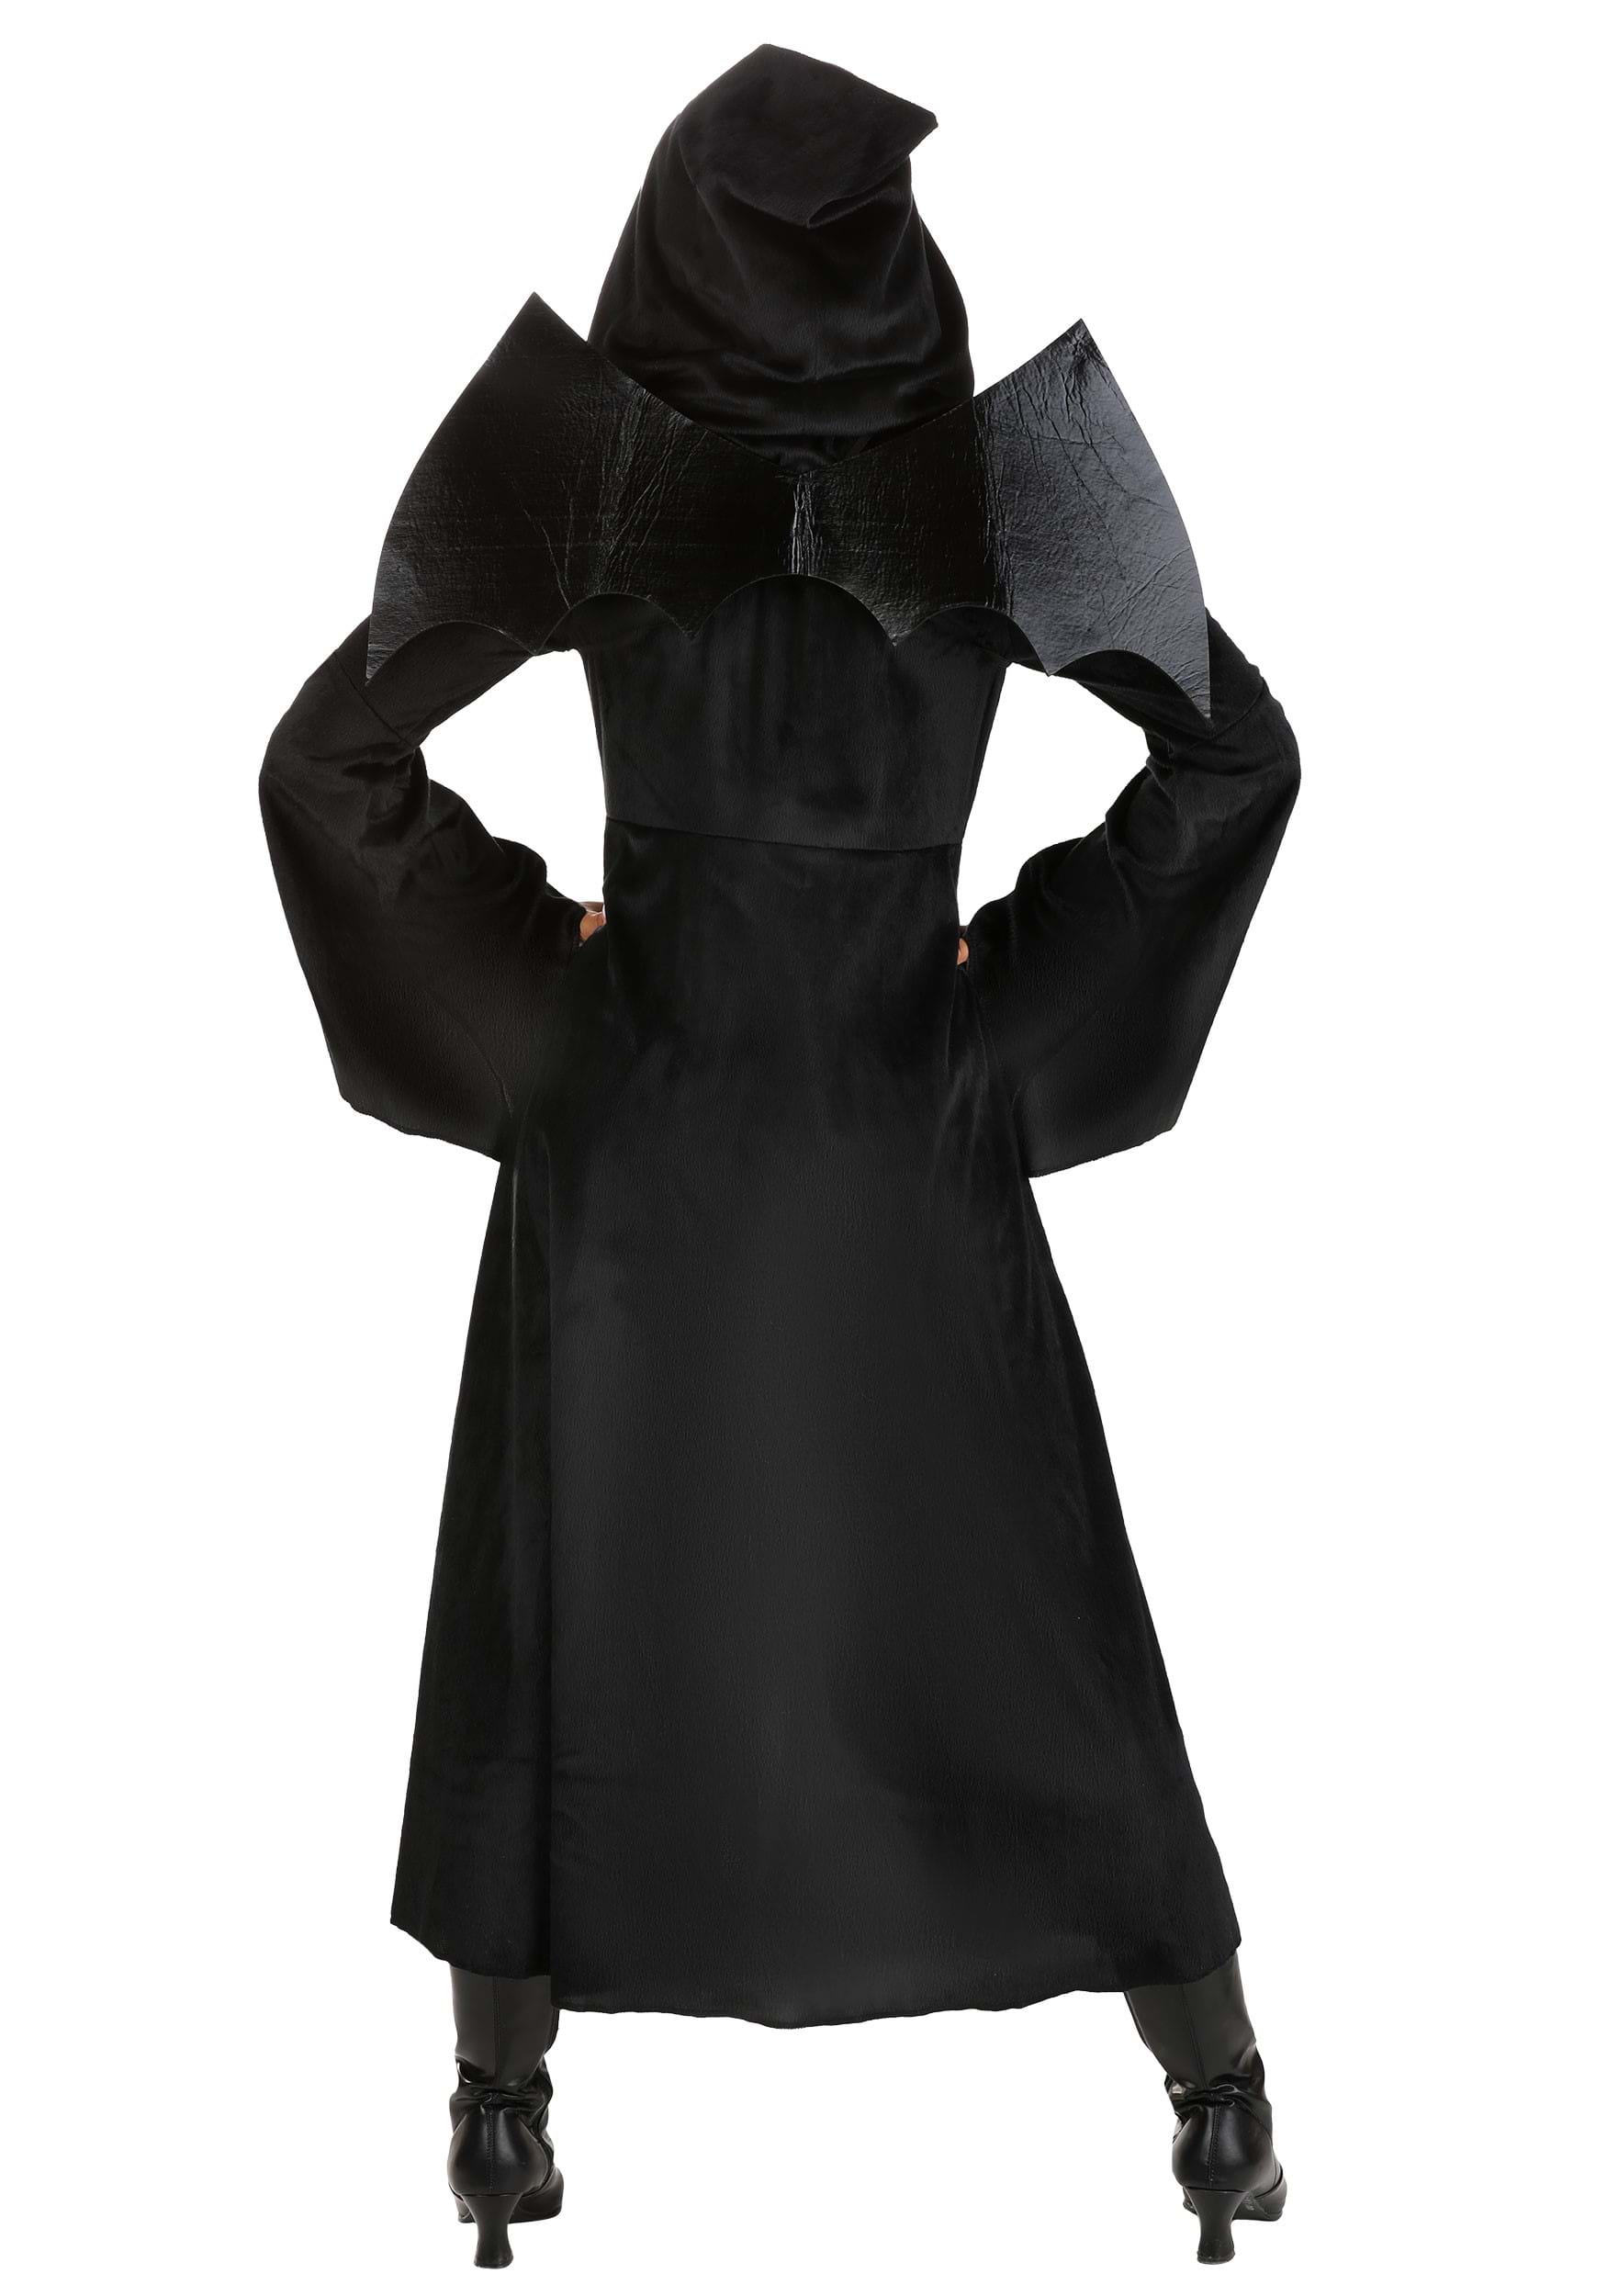 Vampire Cloak Costume For Women